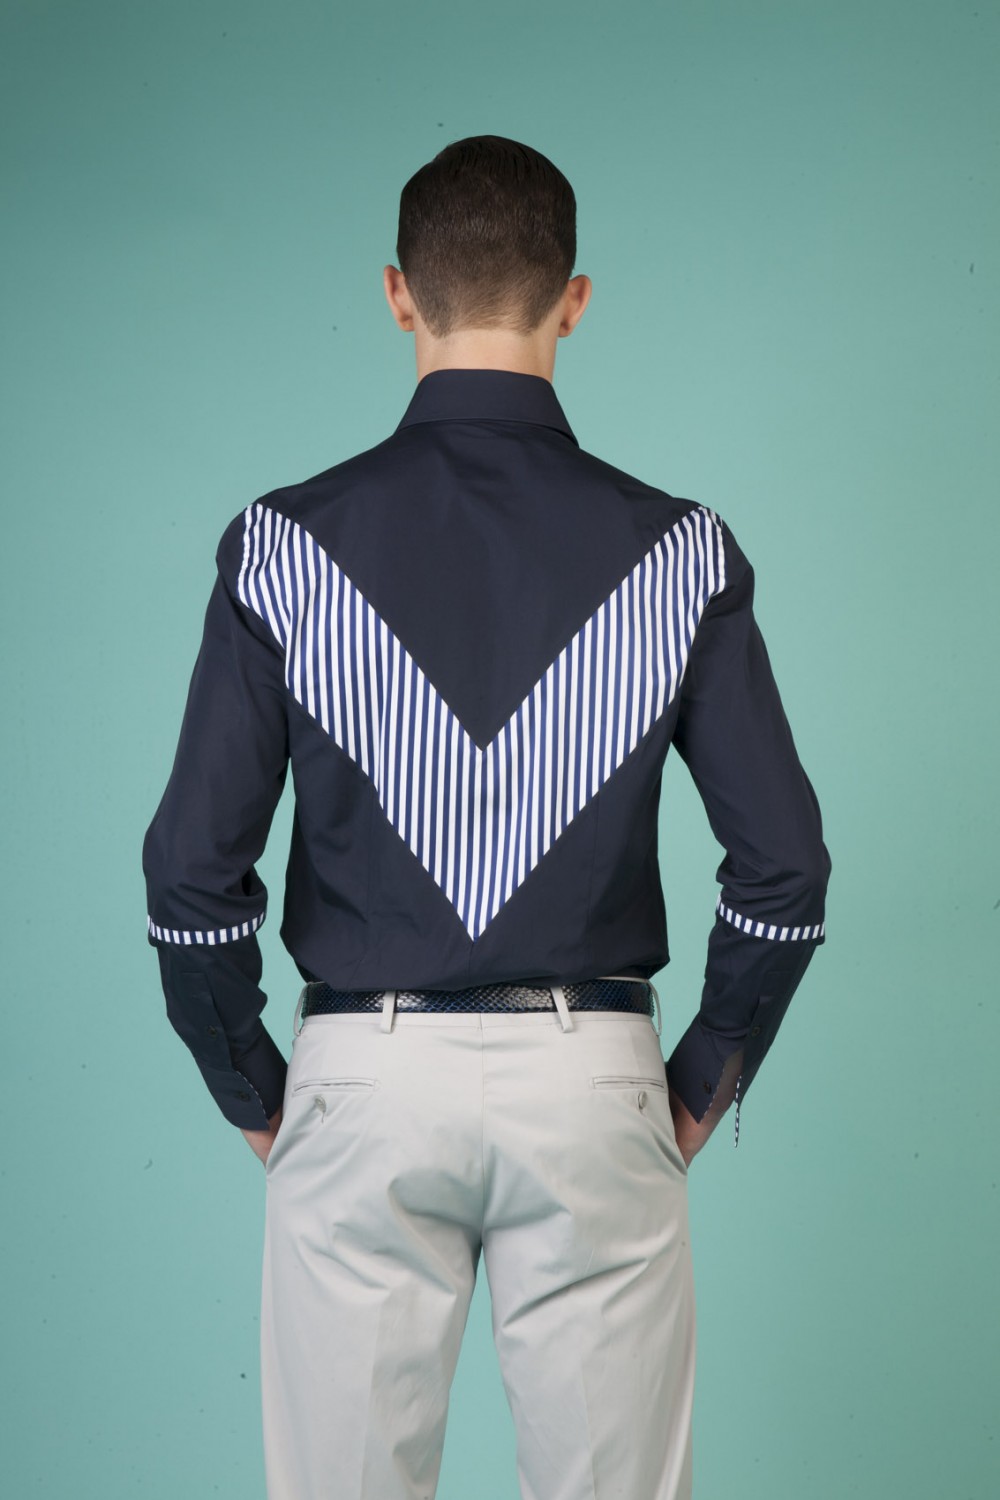 Colour: Navy - Navy/white stripes
Fabric: Cotton